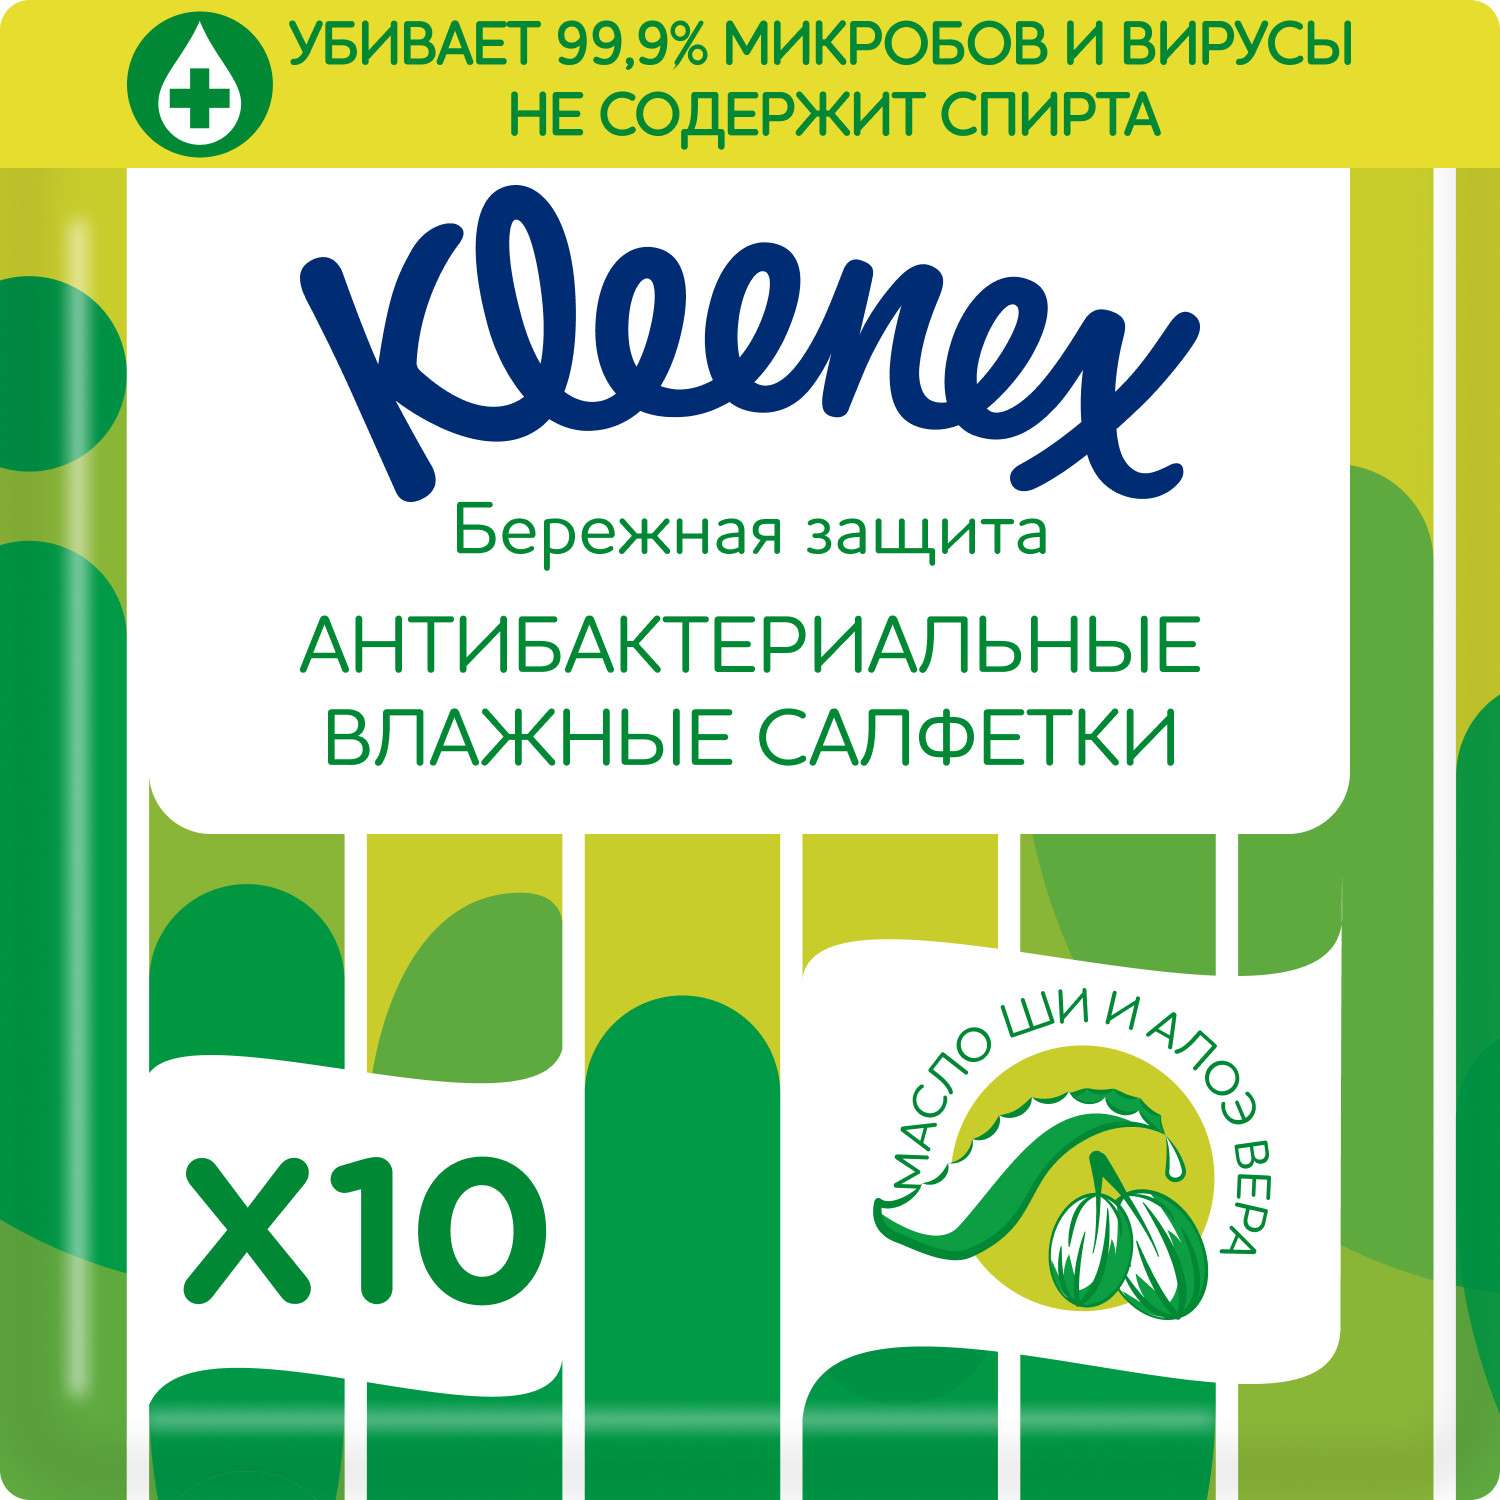 Салфетки влажные Kleenex антибактериальные 10шт - фото 1